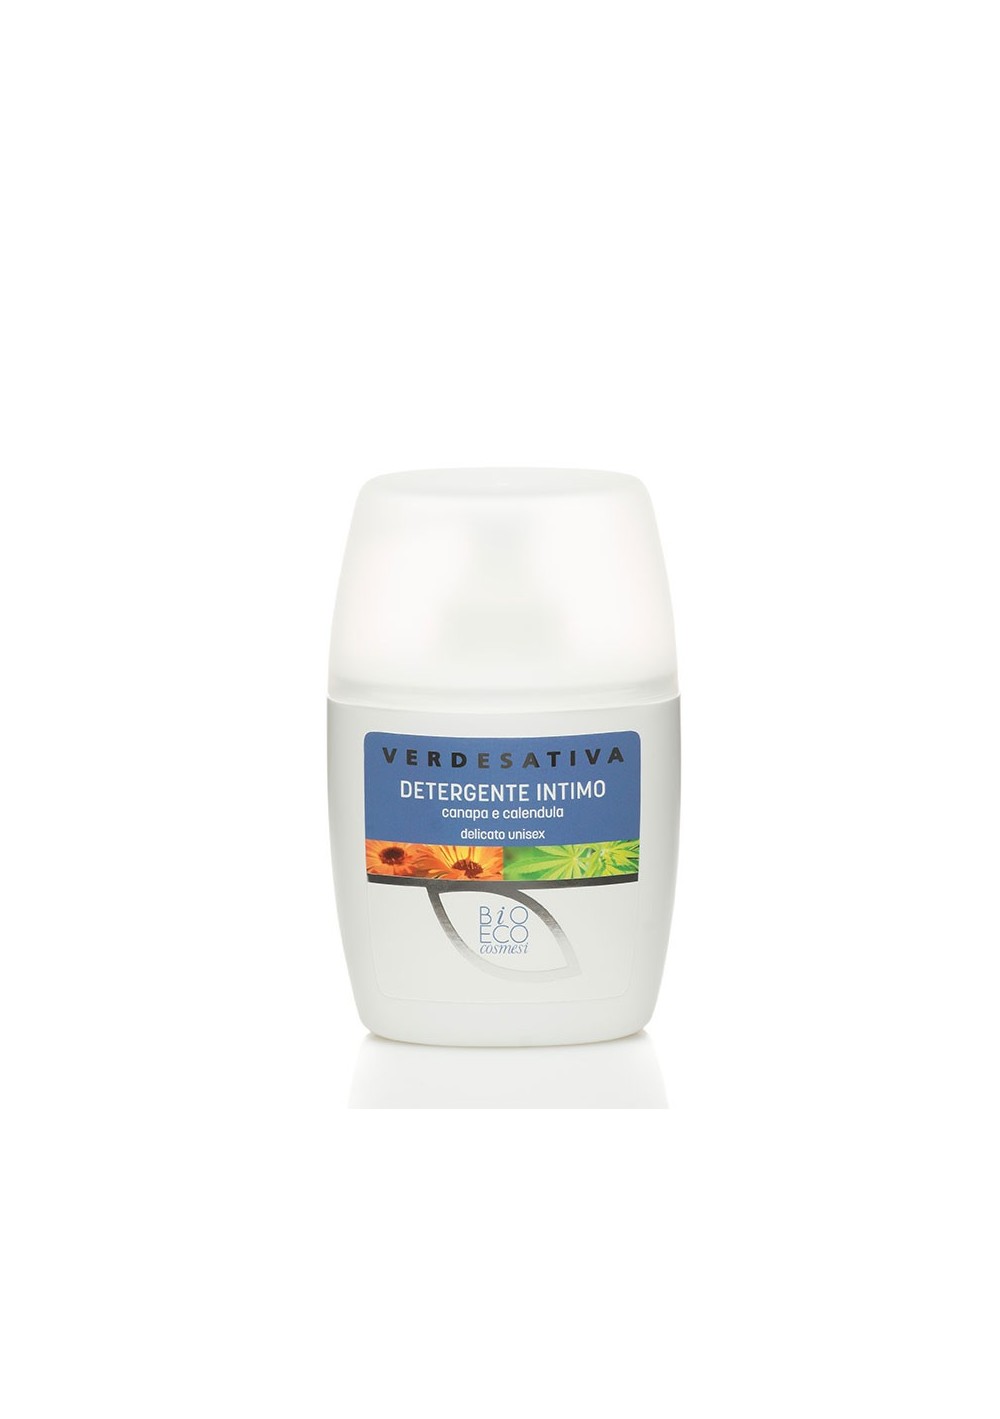 Detergente Intimo alla Calendula Delicato Unisex ml 250 - Verdesativa Bagno Doccia